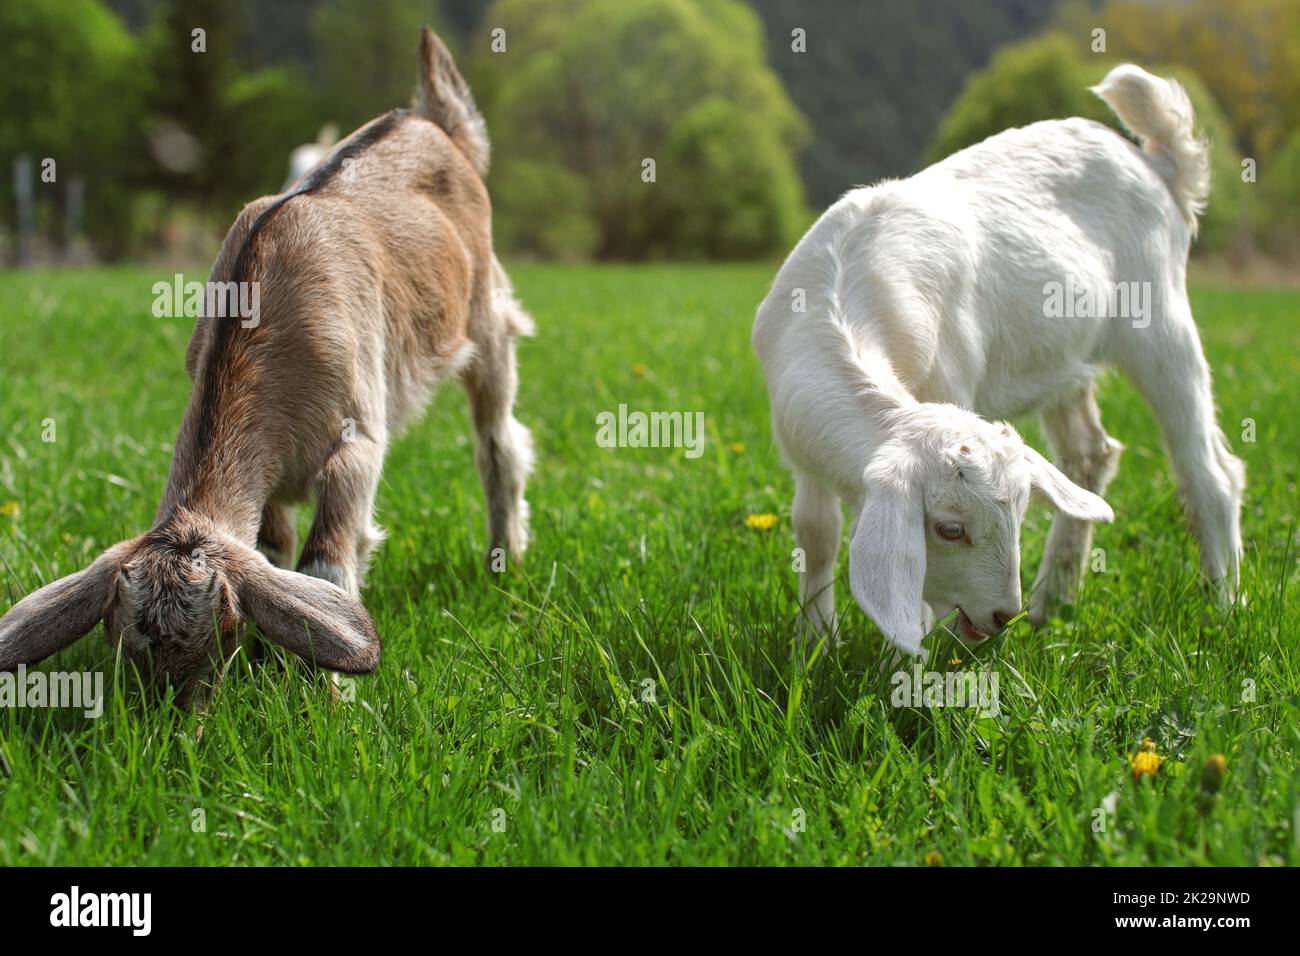 Zwei junge Ziege Kinder, braunen und weißen, die Beweidung von frühlingswiese. Stockfoto